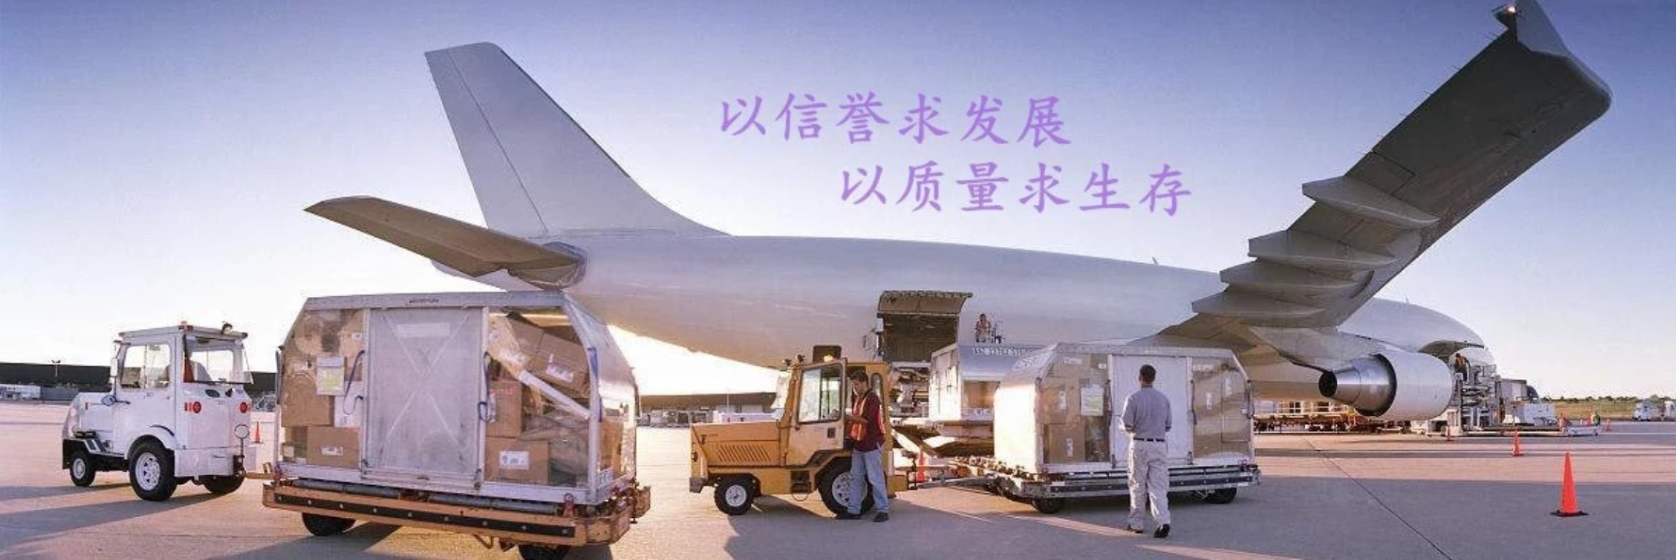 上海到日本海运拼箱物流出口流程代理办理DDUDDP